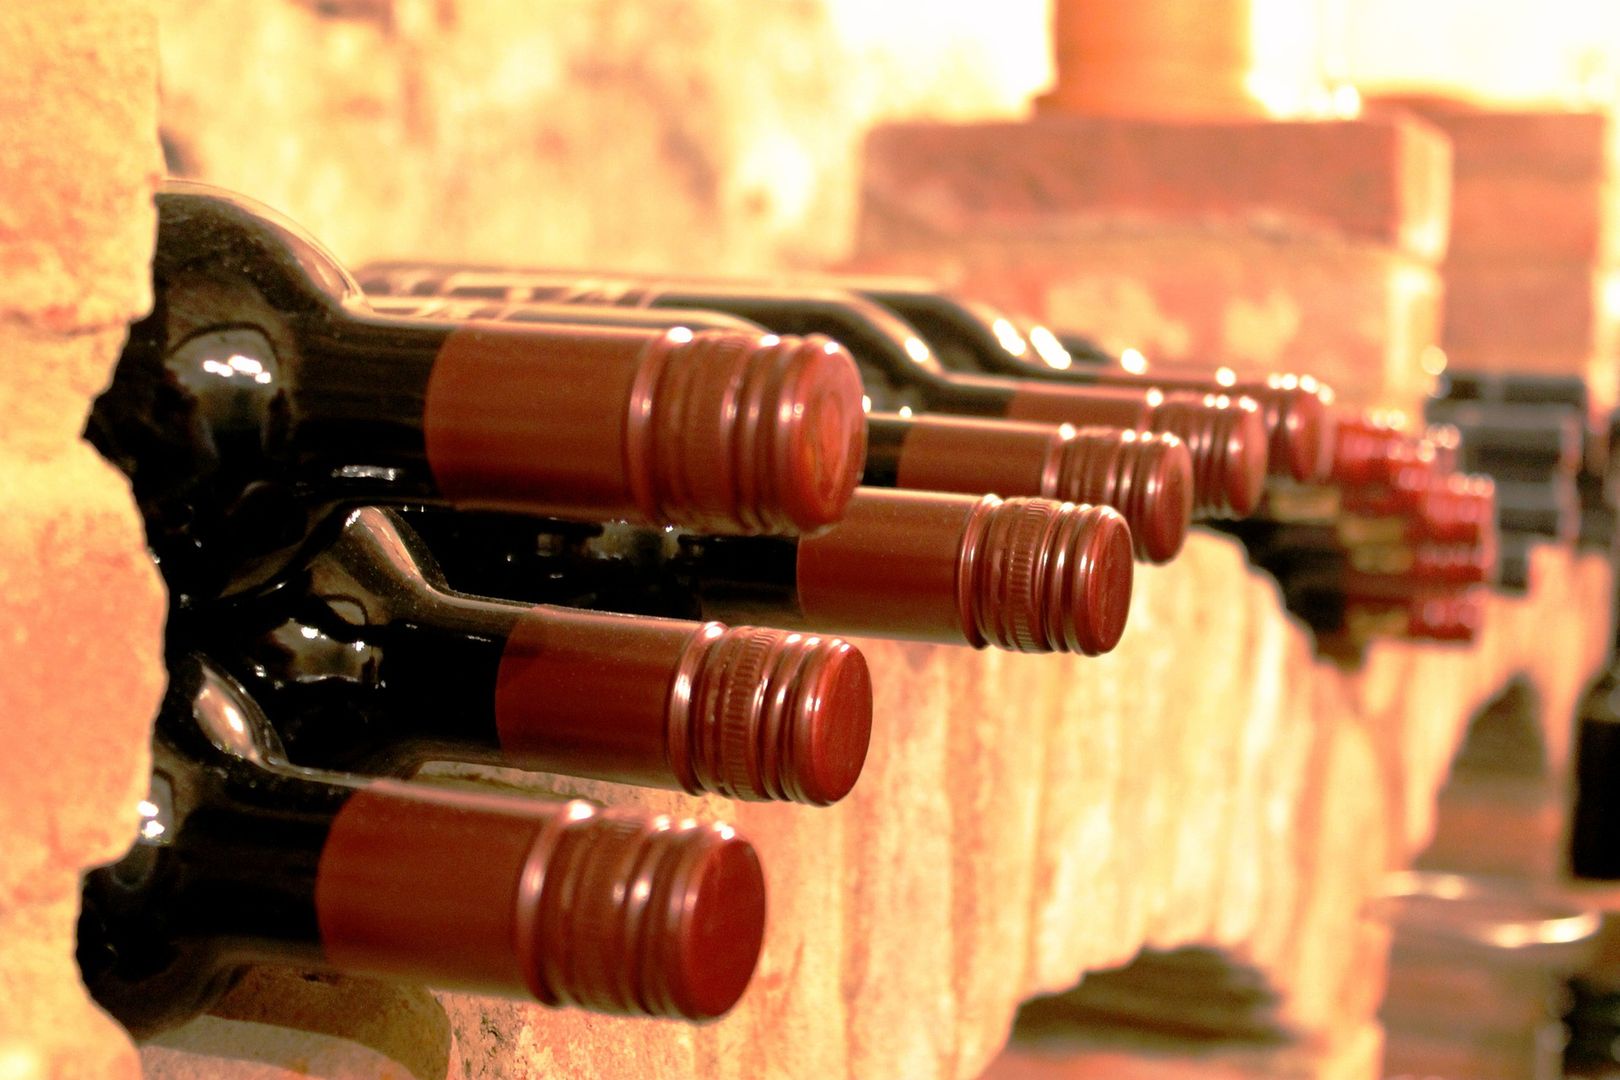 150-letnie wino znalezione pod podłogą zamku. Może być warte majątek